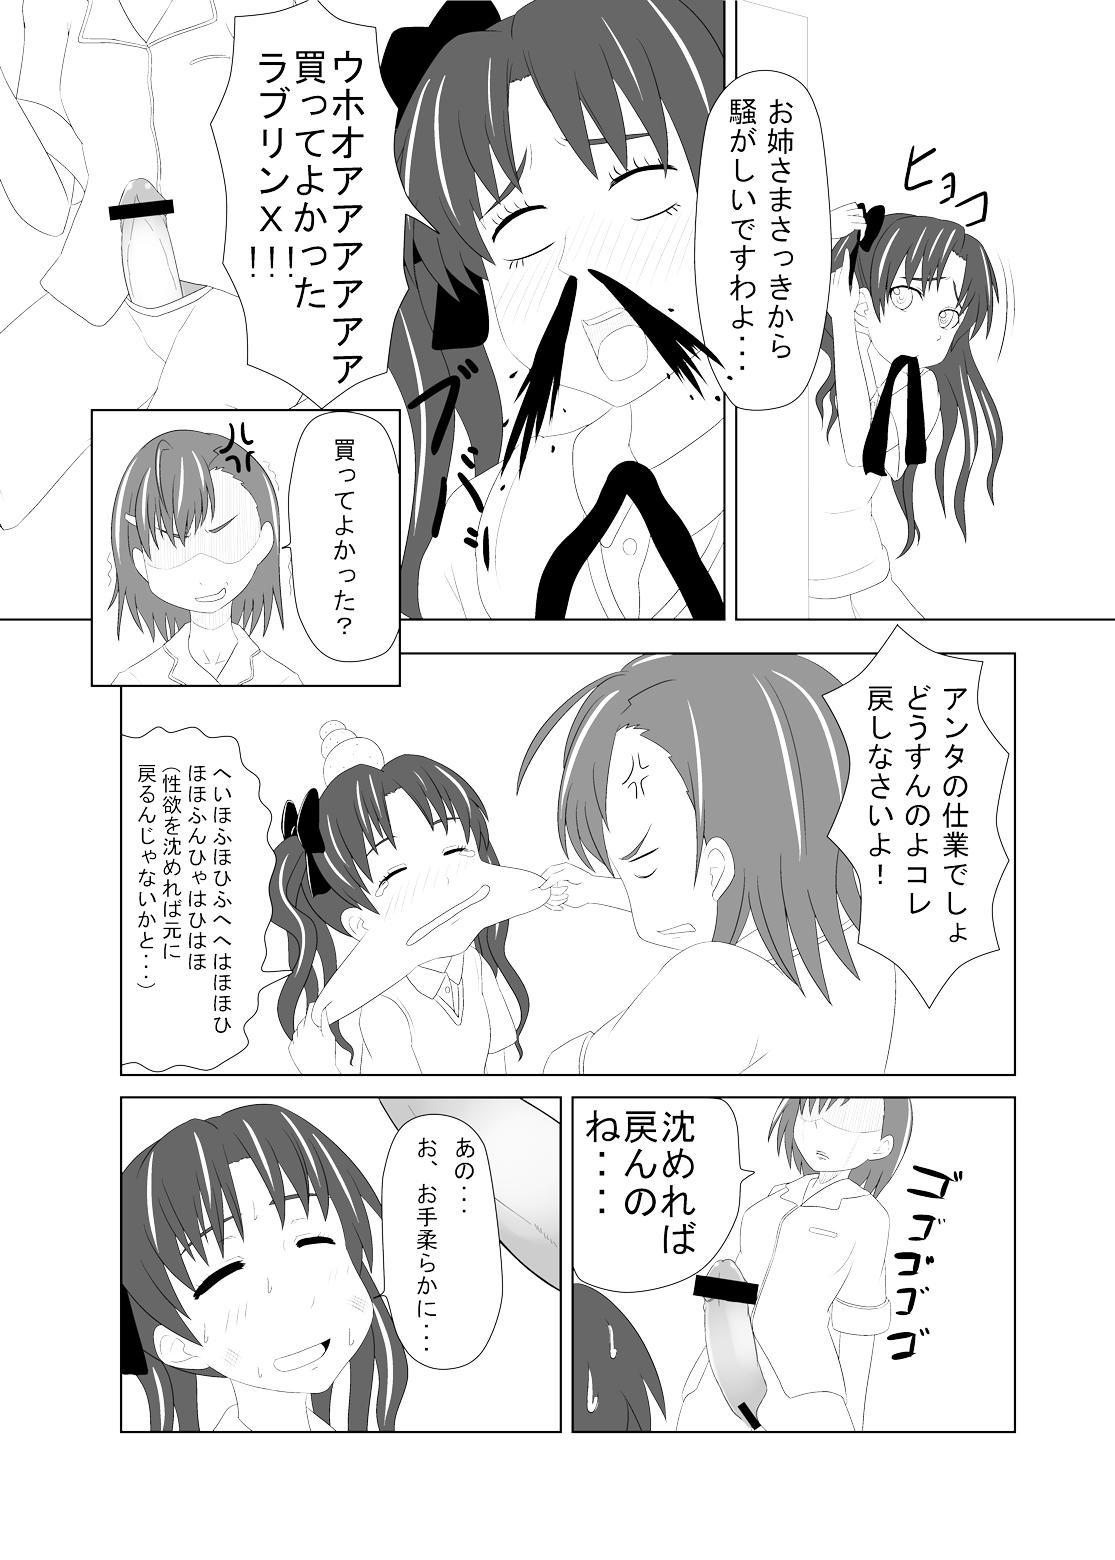 Sucking Toaru Fuuki iin no Manabi Yori - Toaru kagaku no railgun Bokep - Page 8